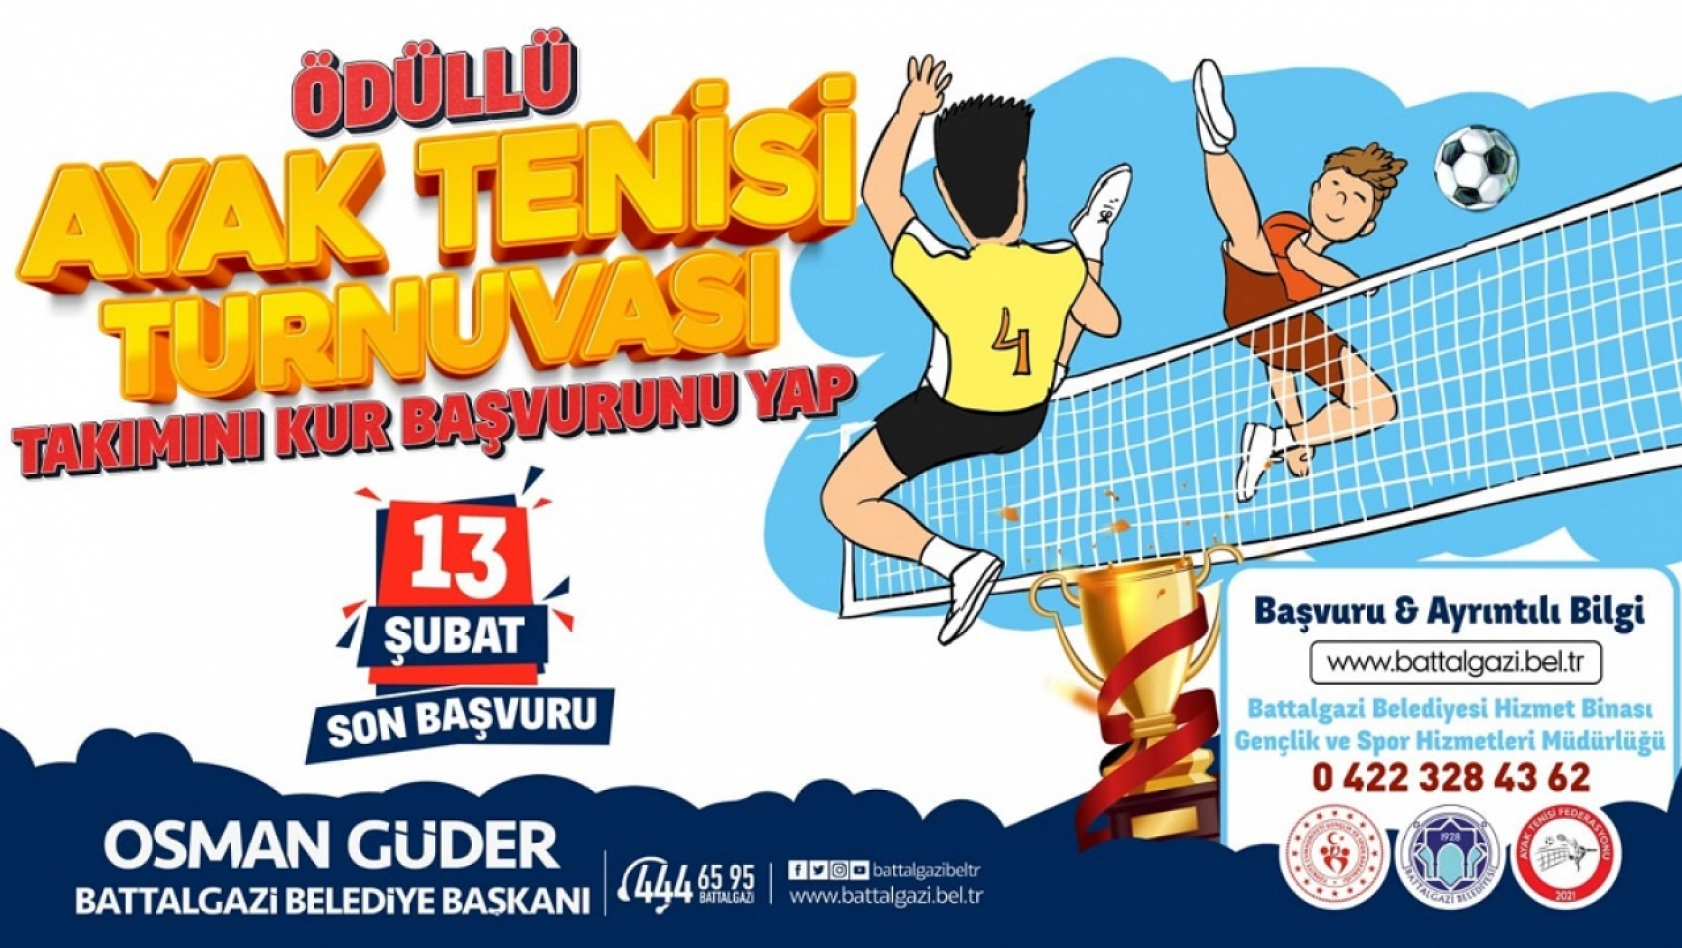 Malatya'da Ödüllü Ayak Tenisi Turnuvası Düzenlenecek